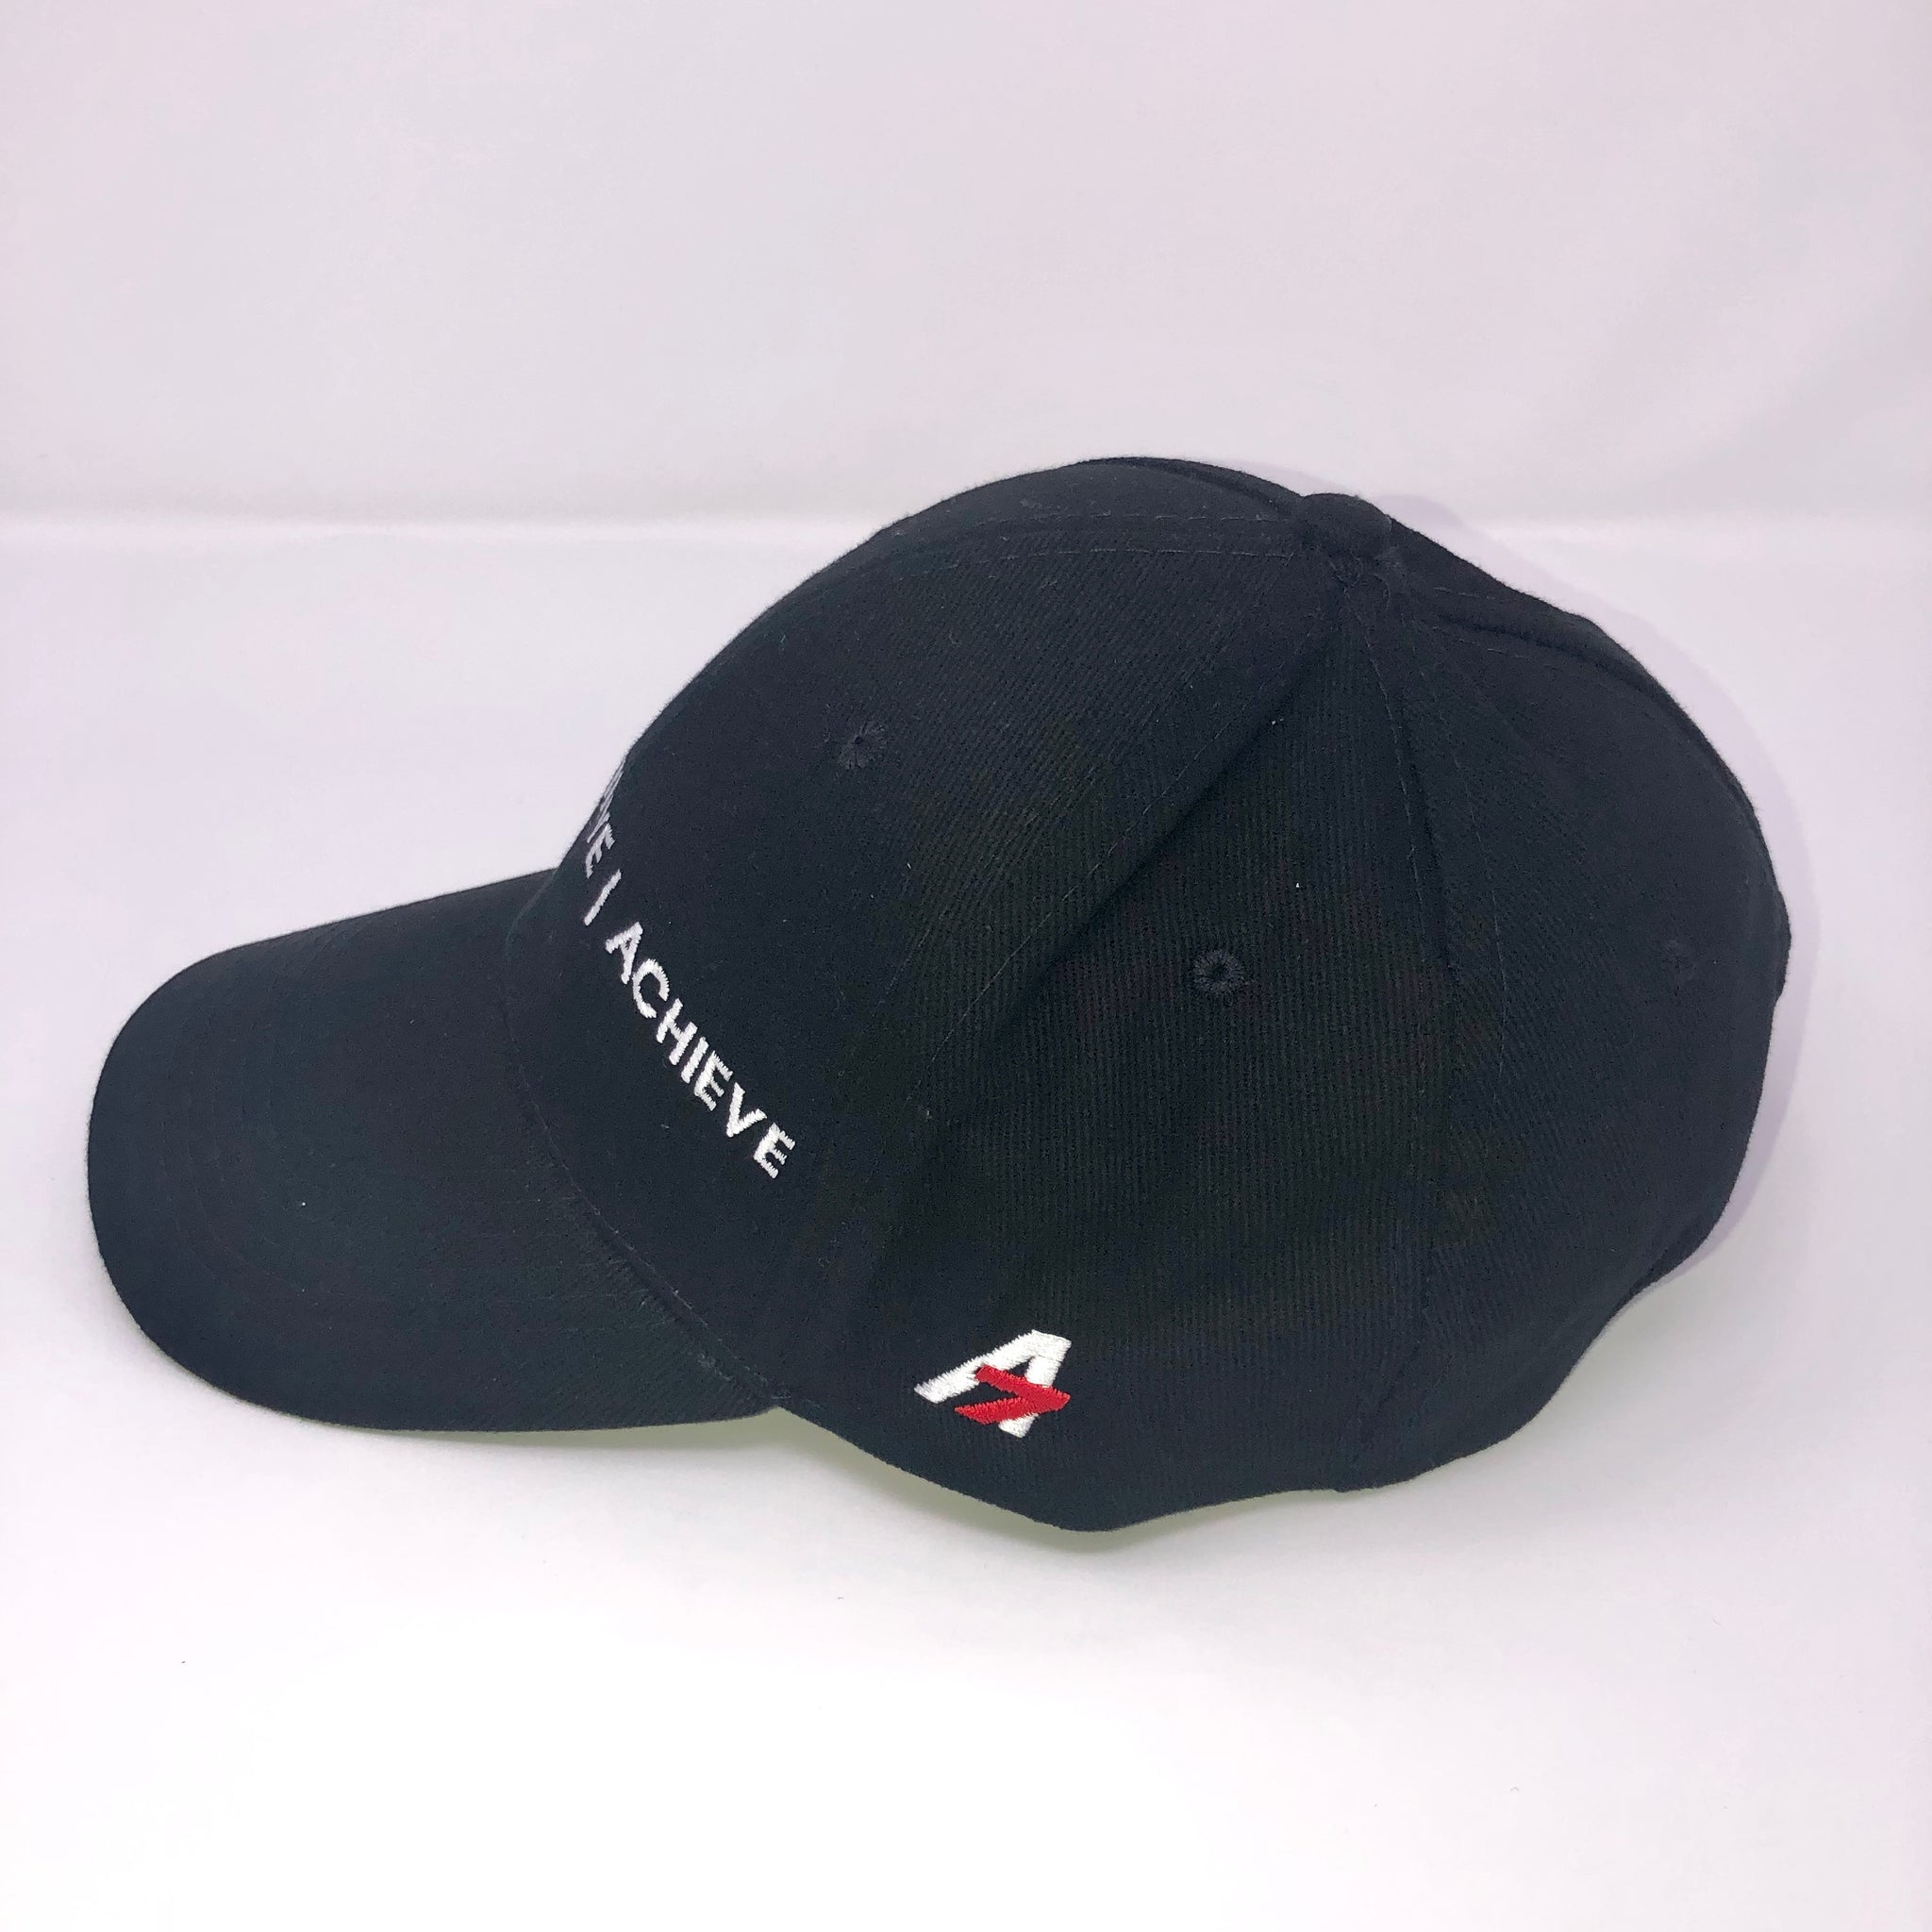 A7Asher Children's "DREAM | BELIEVE | ACHIEVE" Black Baseball cap, signature A7 logo